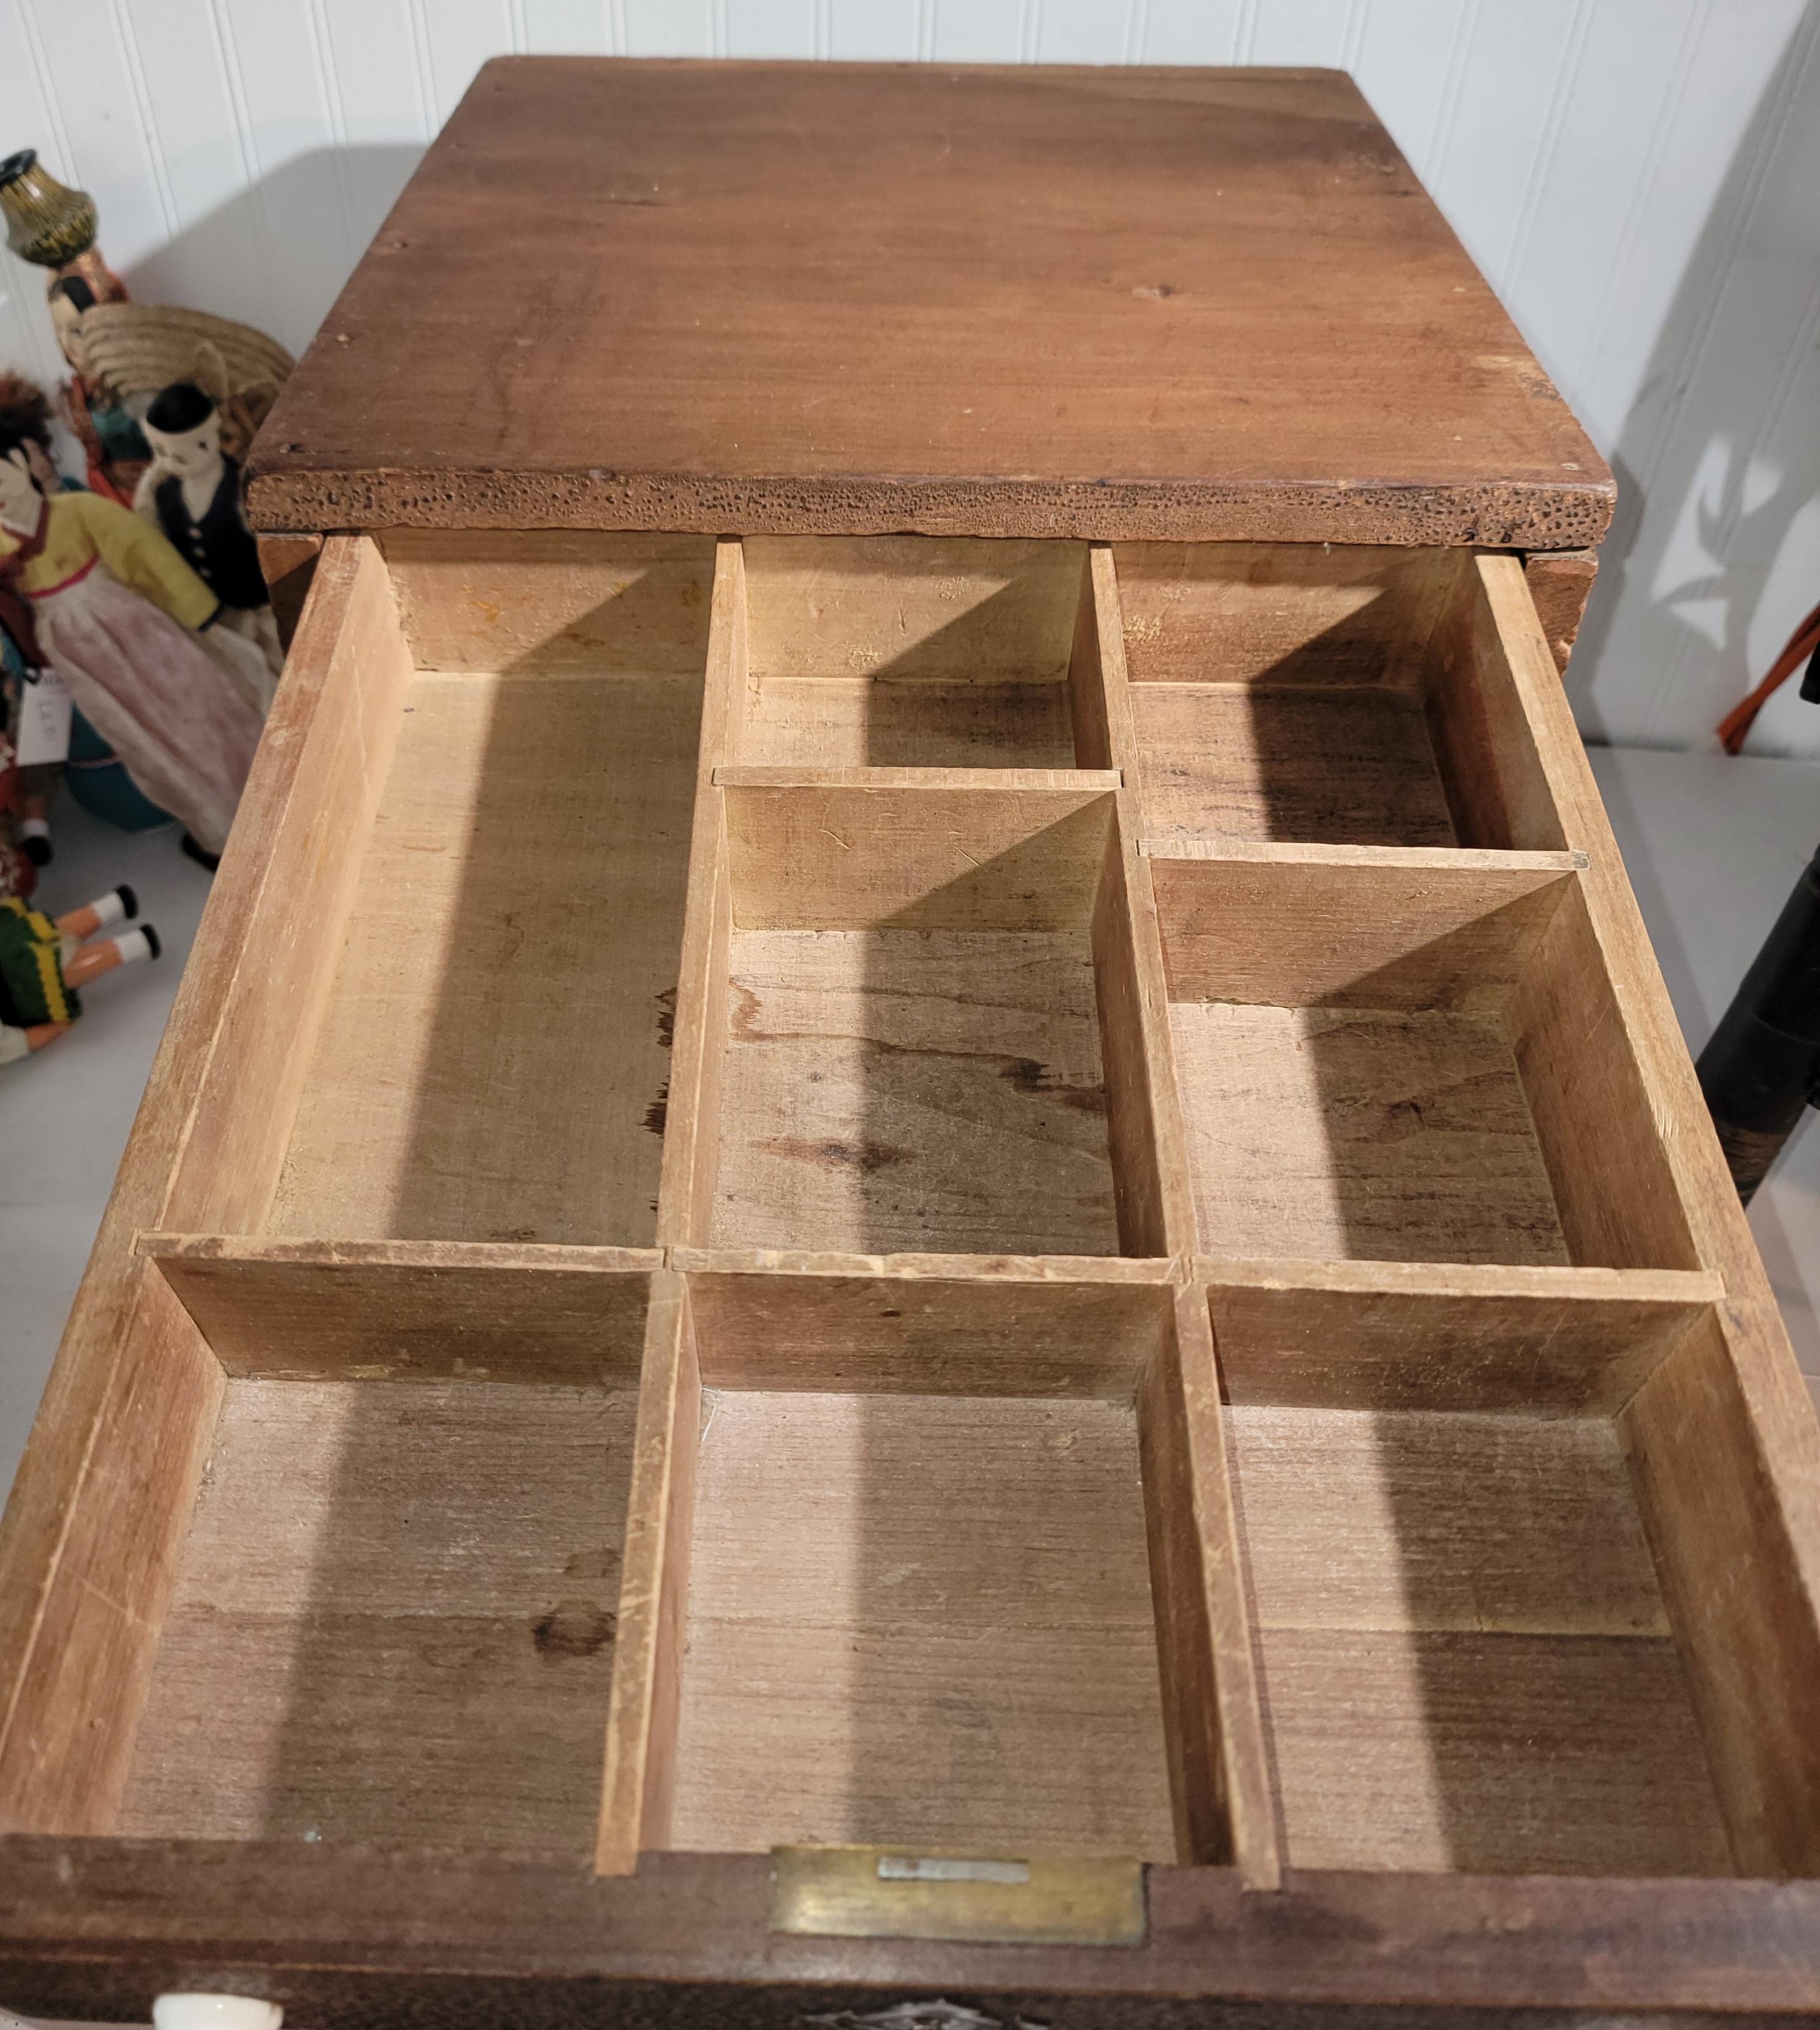 Il s'agit d'une boîte à tiroirs du 19ème siècle ou d'une sorte de tiroir-caisse.La construction est faite de clous coupés et d'un tiroir à queue d'aronde.Il y a une poignée en laiton et en fer sur le côté de la boîte pour la transporter d'un endroit